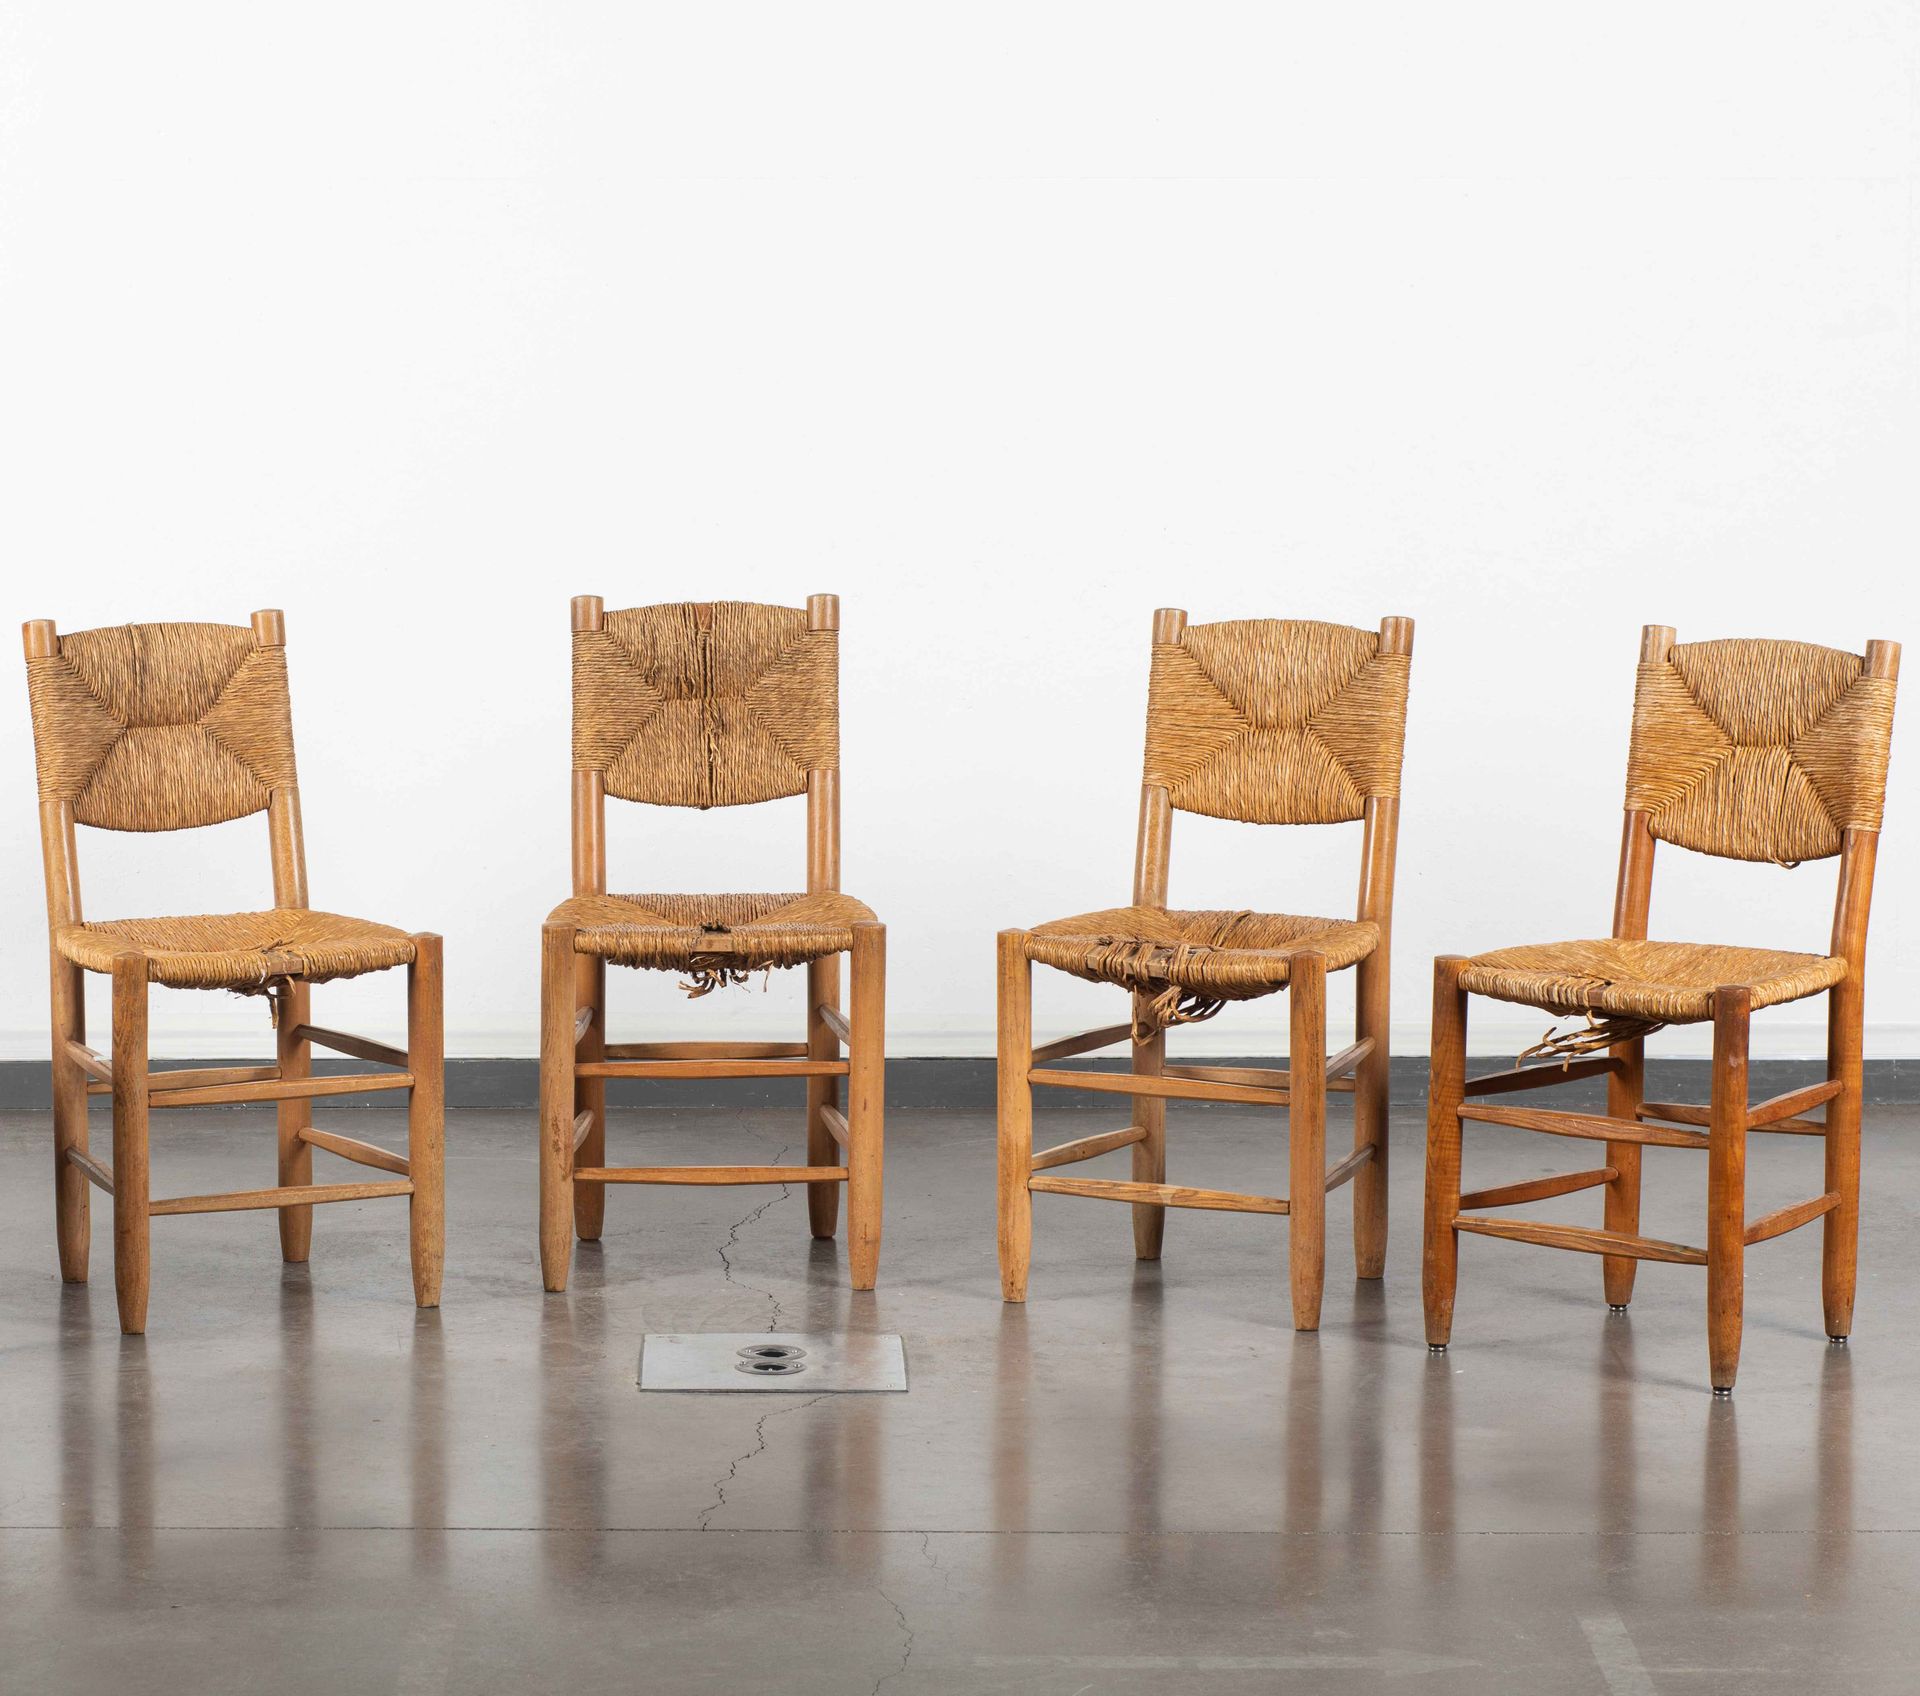 Null 夏洛特-佩里安
4把 "Bauche "椅子，模型创建于1939年。 
实木结构，座椅和椅背为稻草编织。稻草的事故。斯蒂芬-西蒙版。